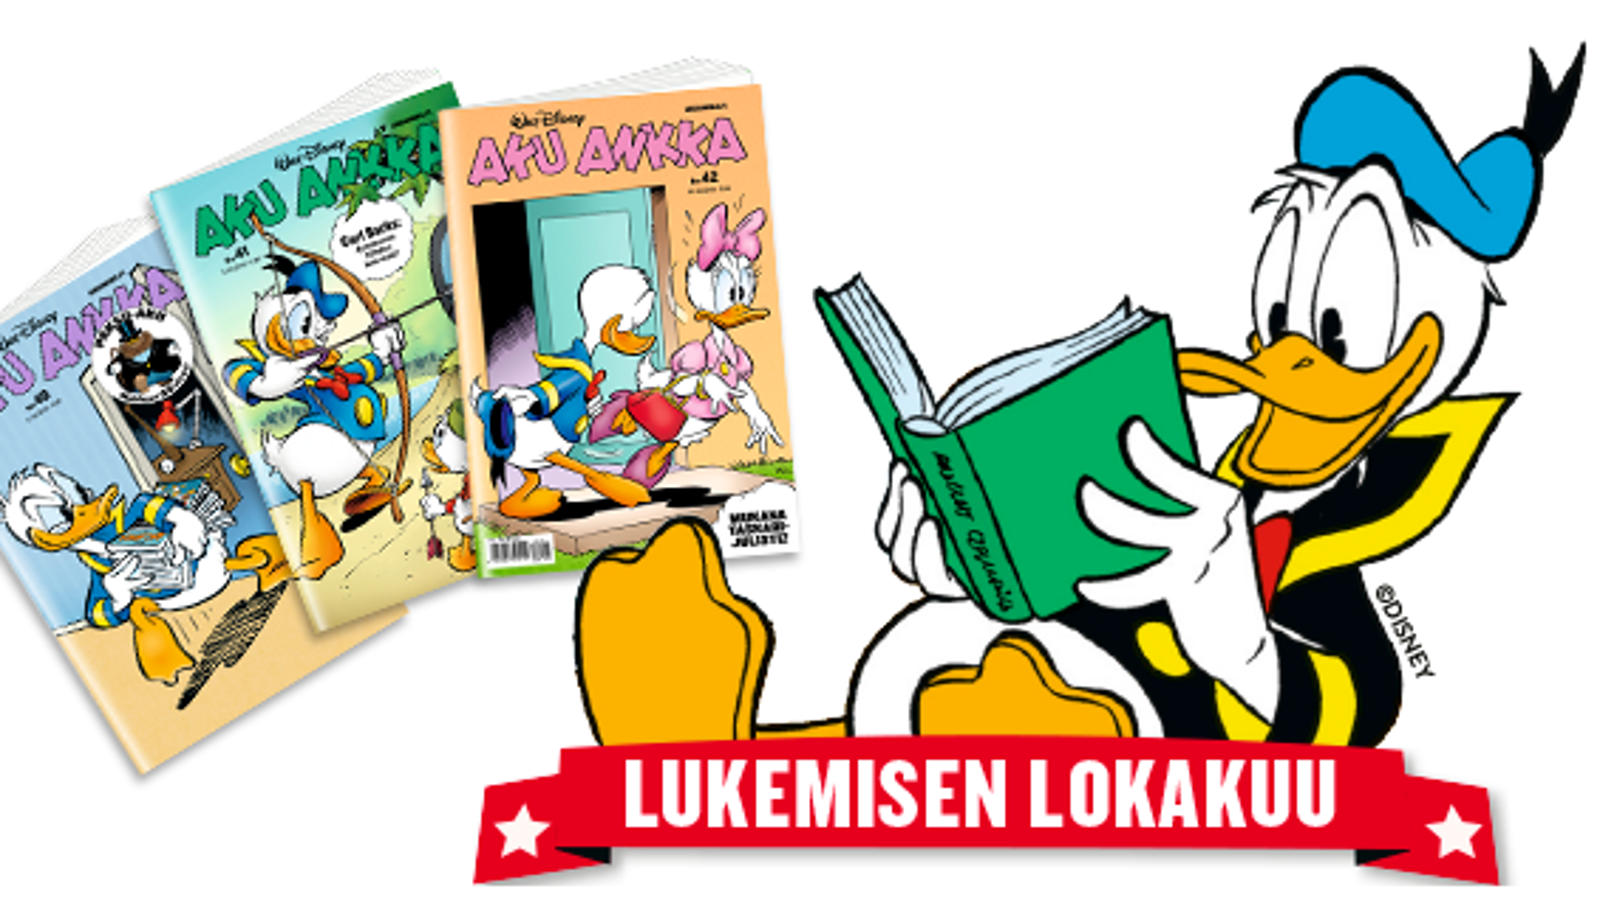 Kuvassa on oikealla Aku Ankka lukemassa vihreä kantista kirjaa.  Aku Ankka löhöää ja hänen allaan on punainen nauha, jossa lukee Lukemisen lokakuu.  vieressä on kolme Aku Ankka -lehden kantta.